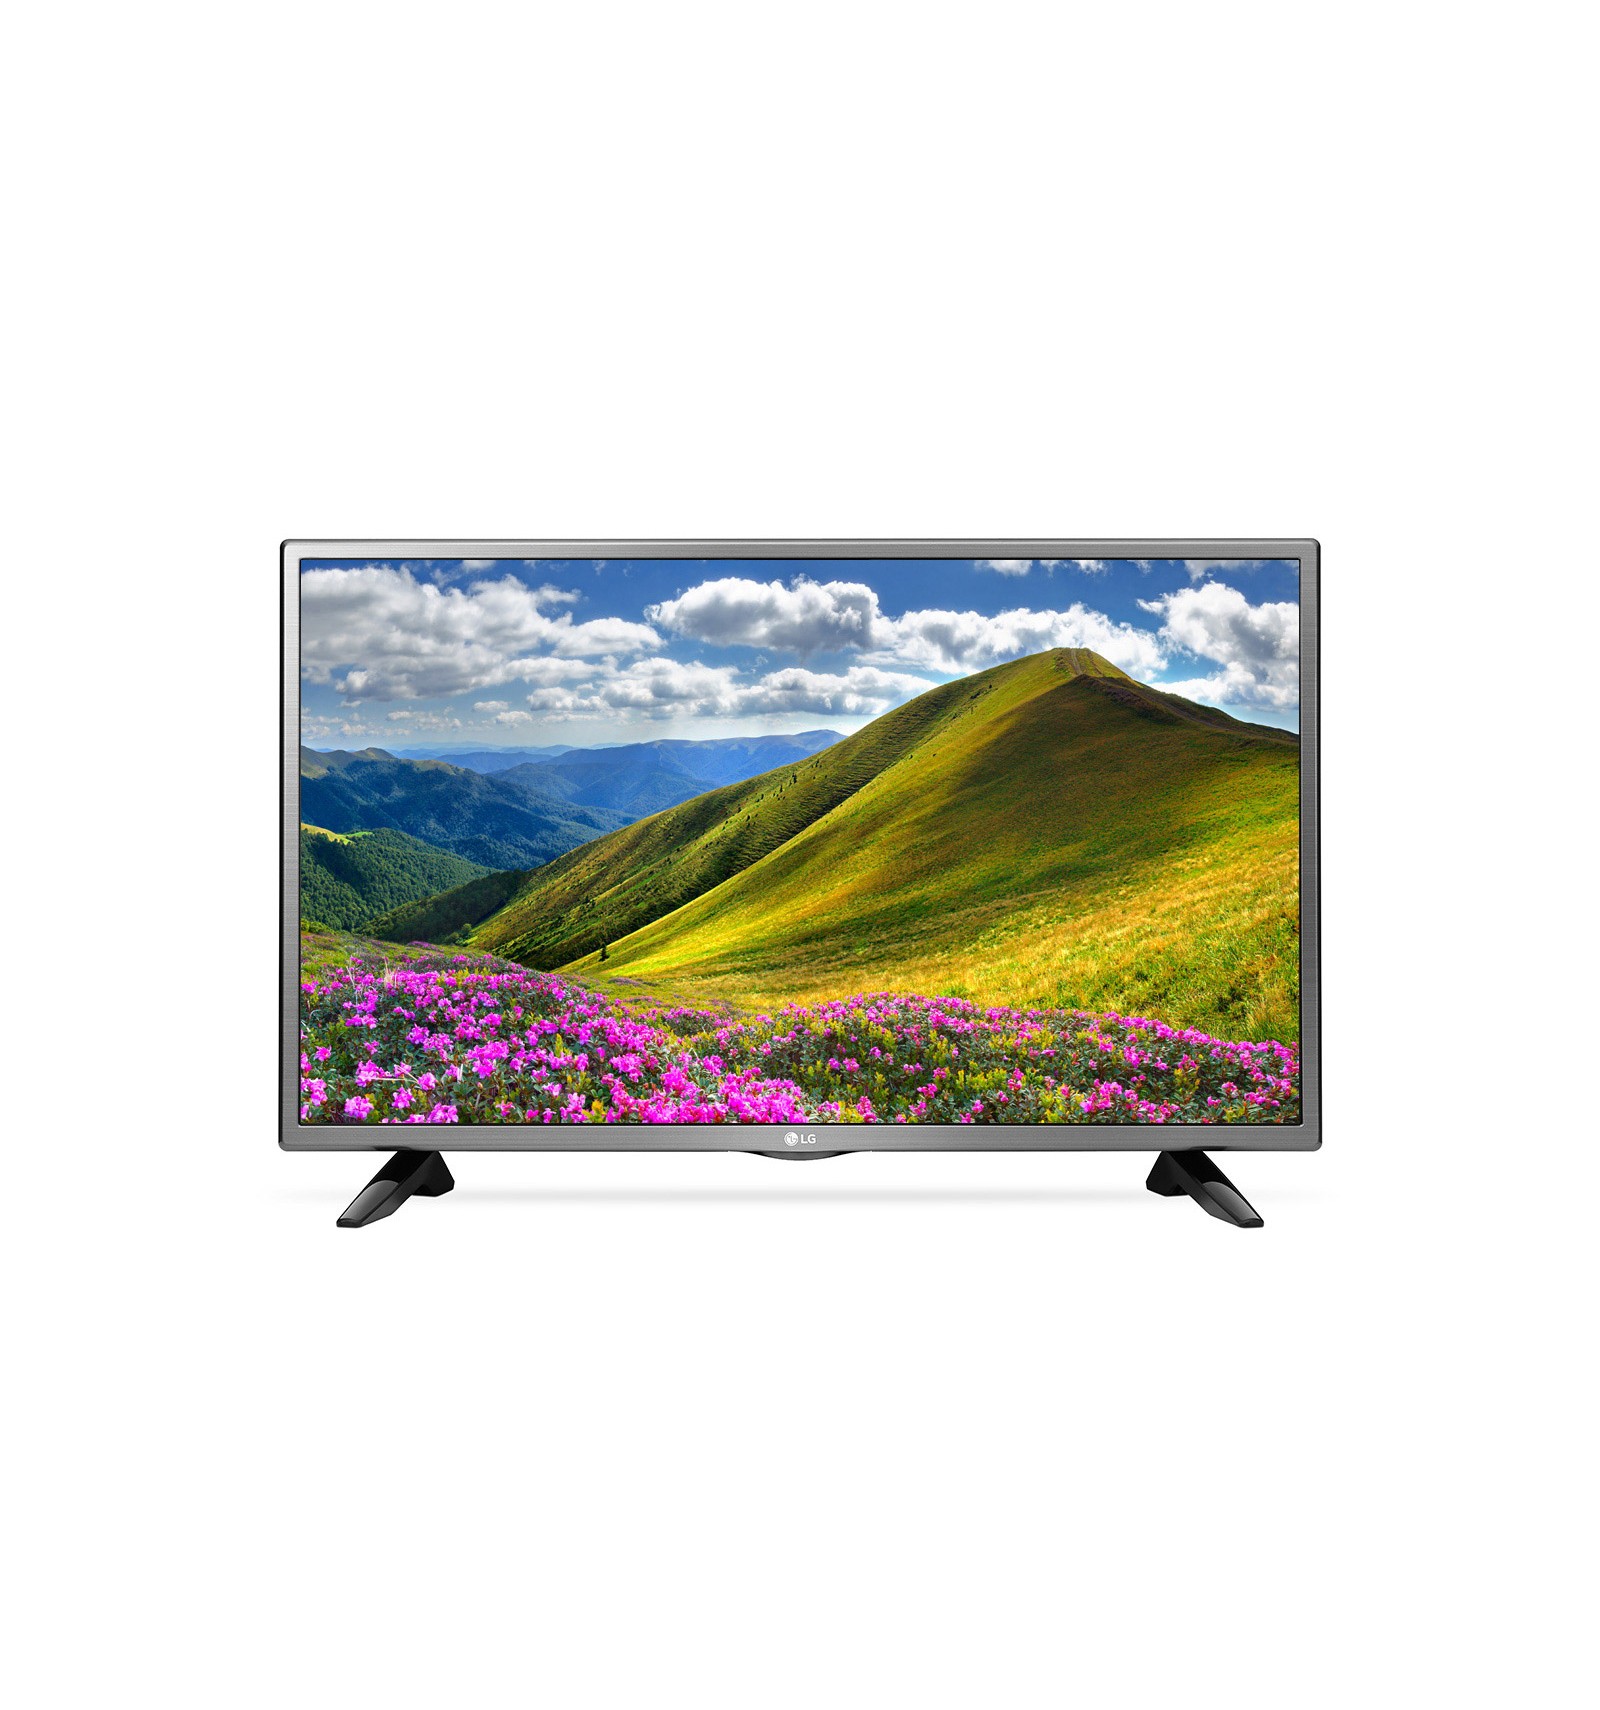 Последняя версия телевизора lg. Телевизор LG 43lj510v. ЖК телевизор LG 32lj510u. LG 32lj600u 2017 led. Телевизор LG 32lj510u 32" (2017).